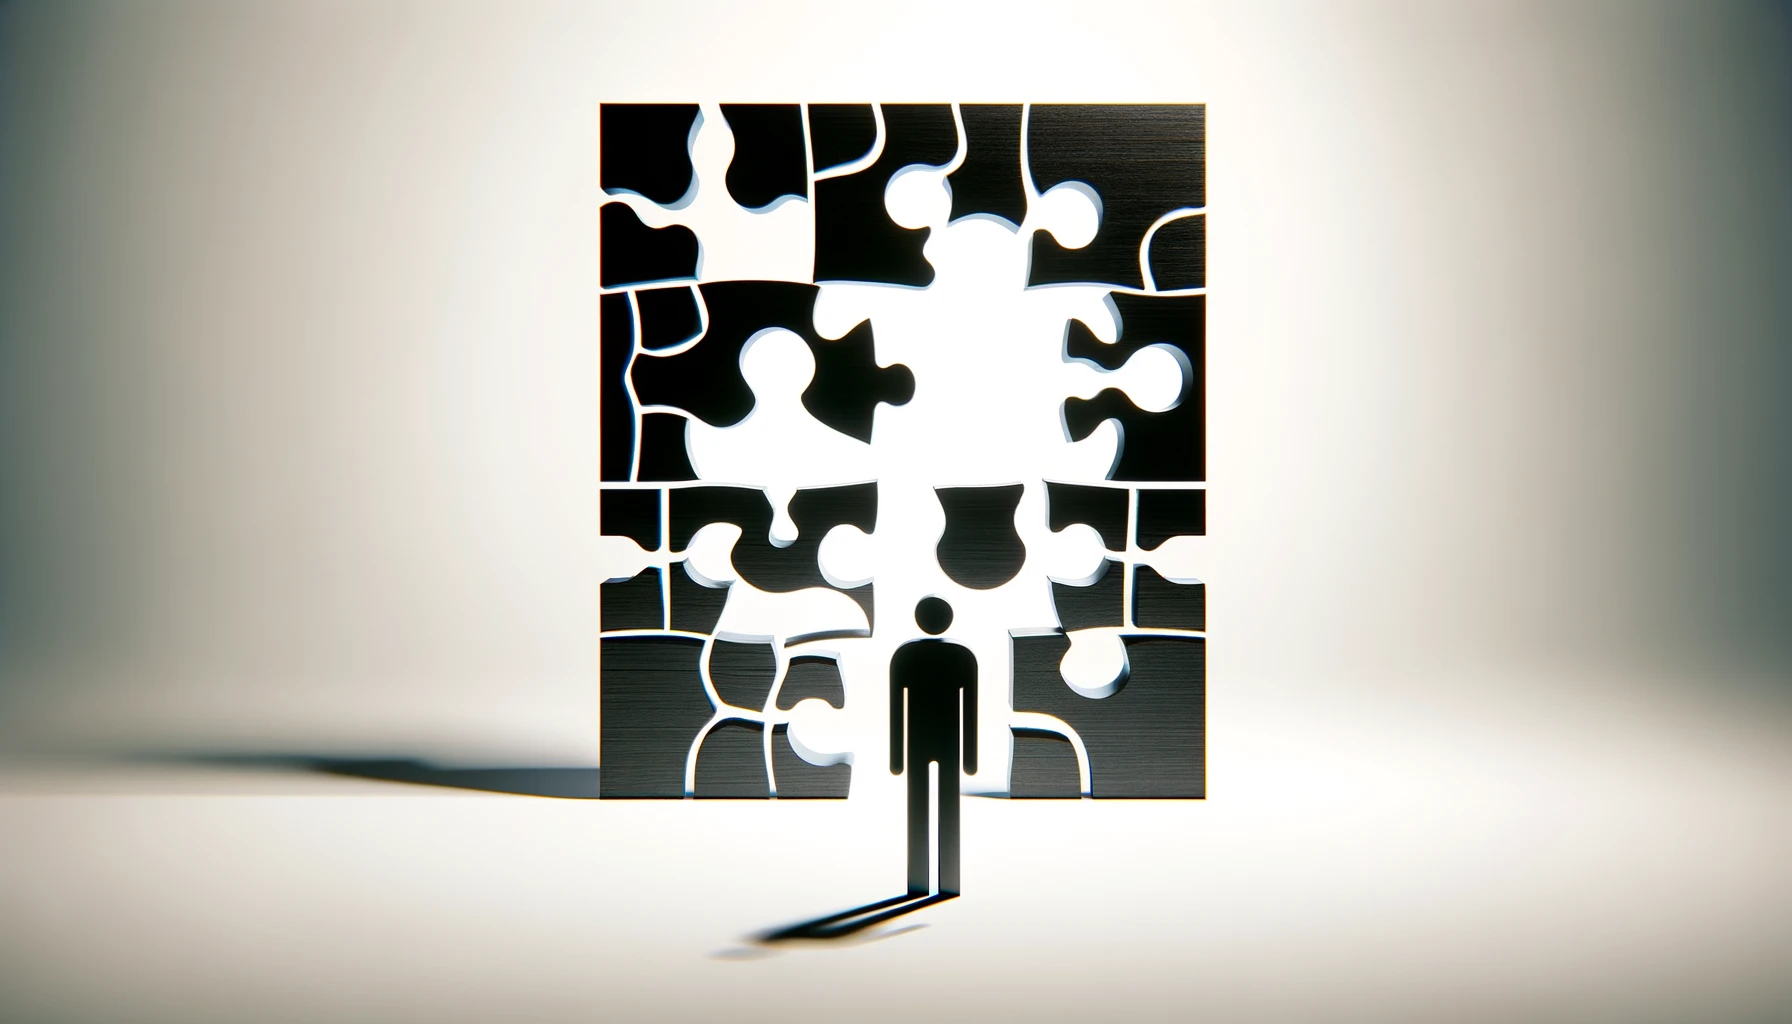 Visualisierung des Themas "Schwarz auf weiß: Werte, Ziele und Entscheidungen" durch die grafische Gestaltung eines Puzzles.